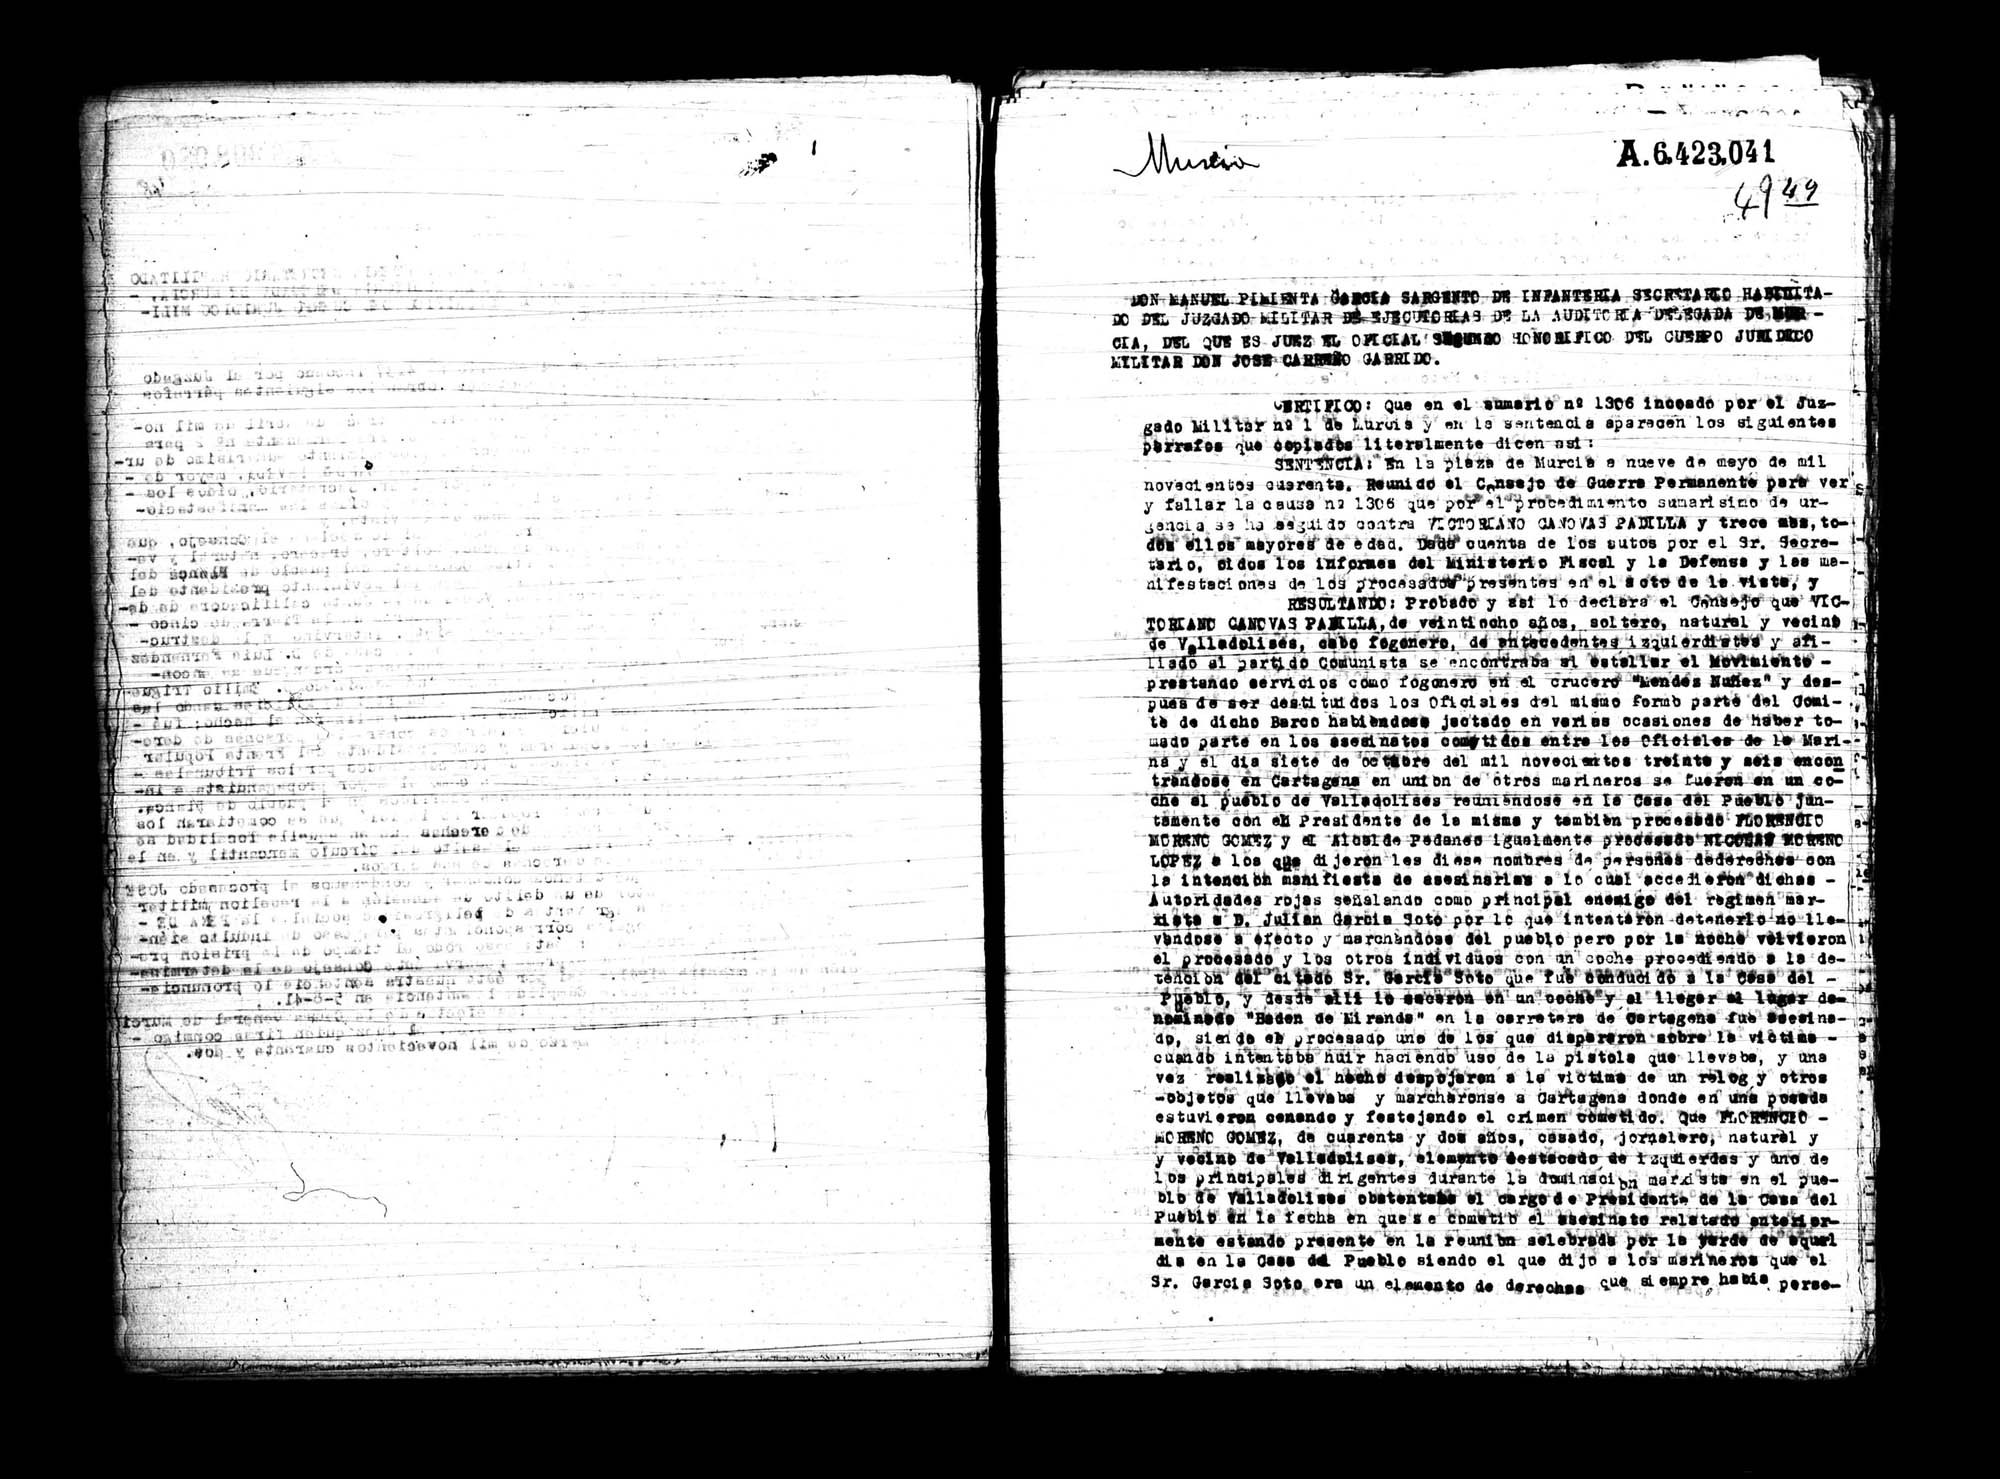 Certificado de la sentencia pronunciada contra Victoriano Cánovas Padilla, Florencio Moreno Gómez, Nicolás Moreno López y Miguel Sánchez Ruiz, causa 1306, el 9 de mayo de 1940 en Murcia.